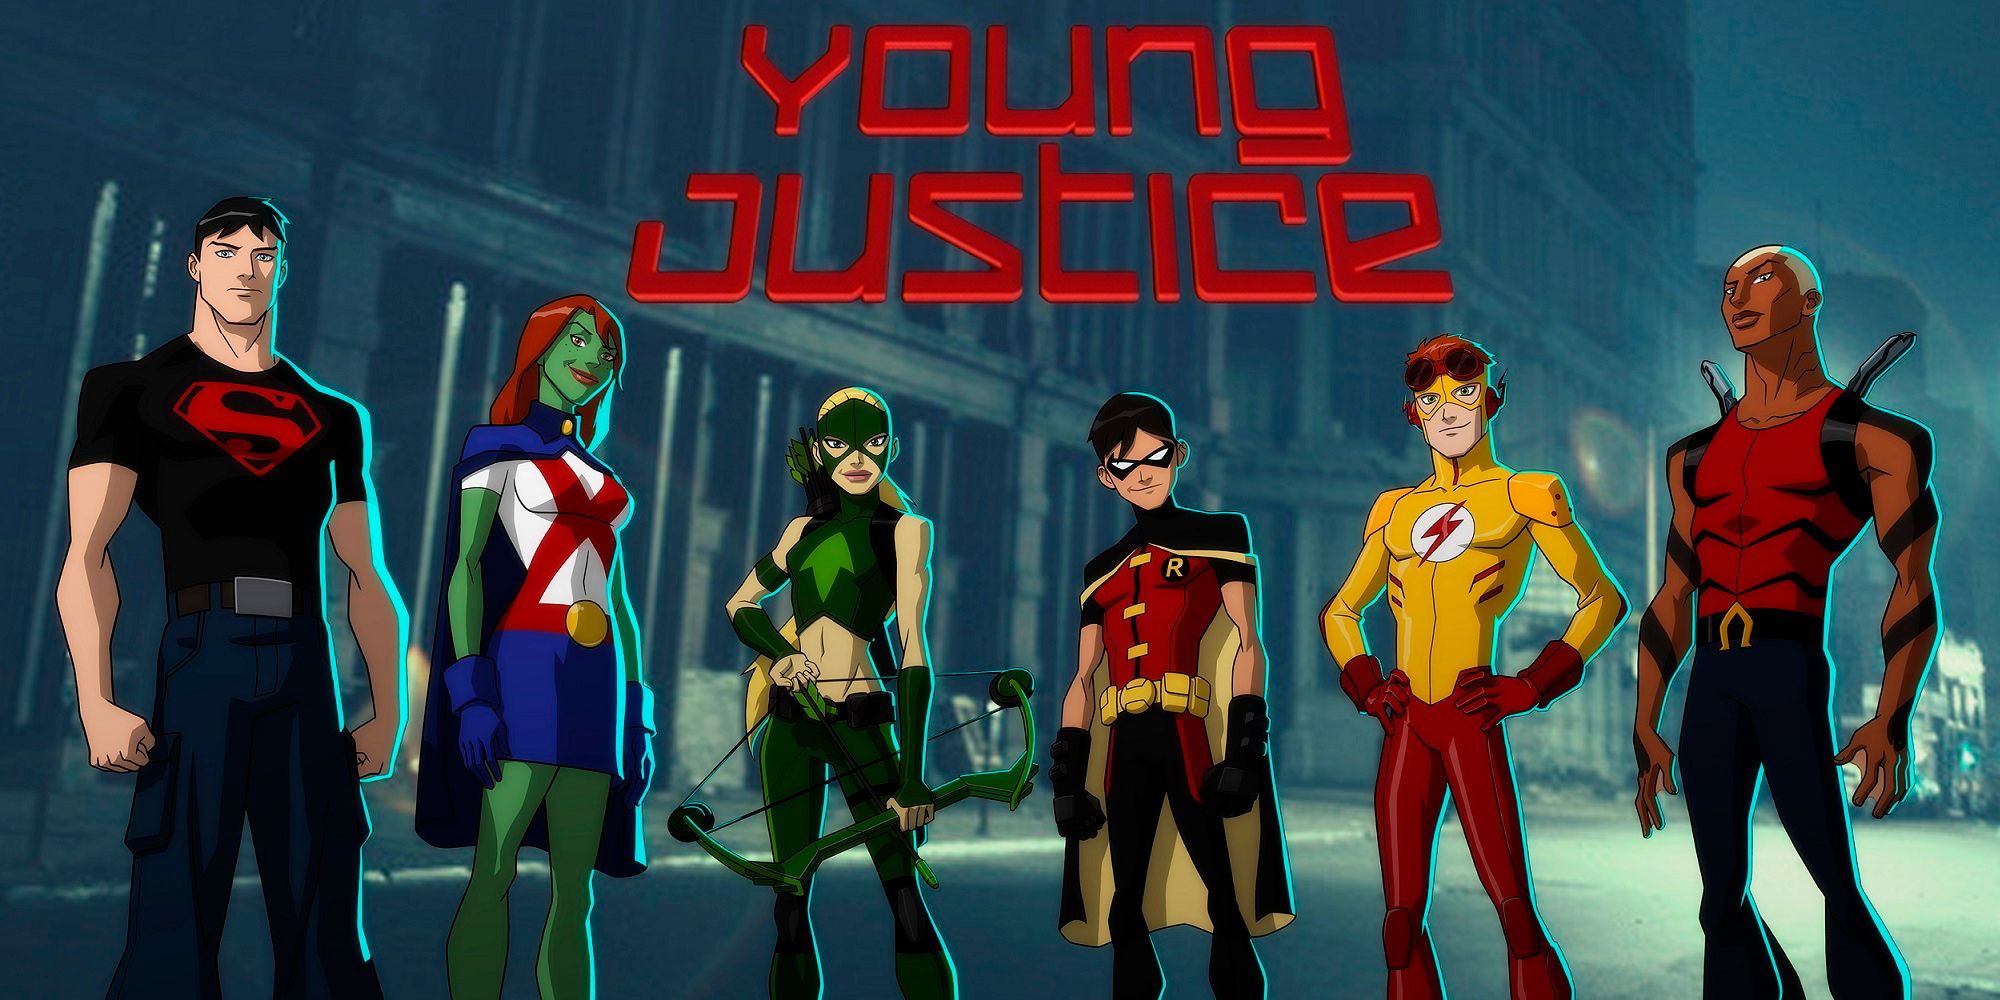 Young justice - yabancı dizi önerileri!! - figurex dizi